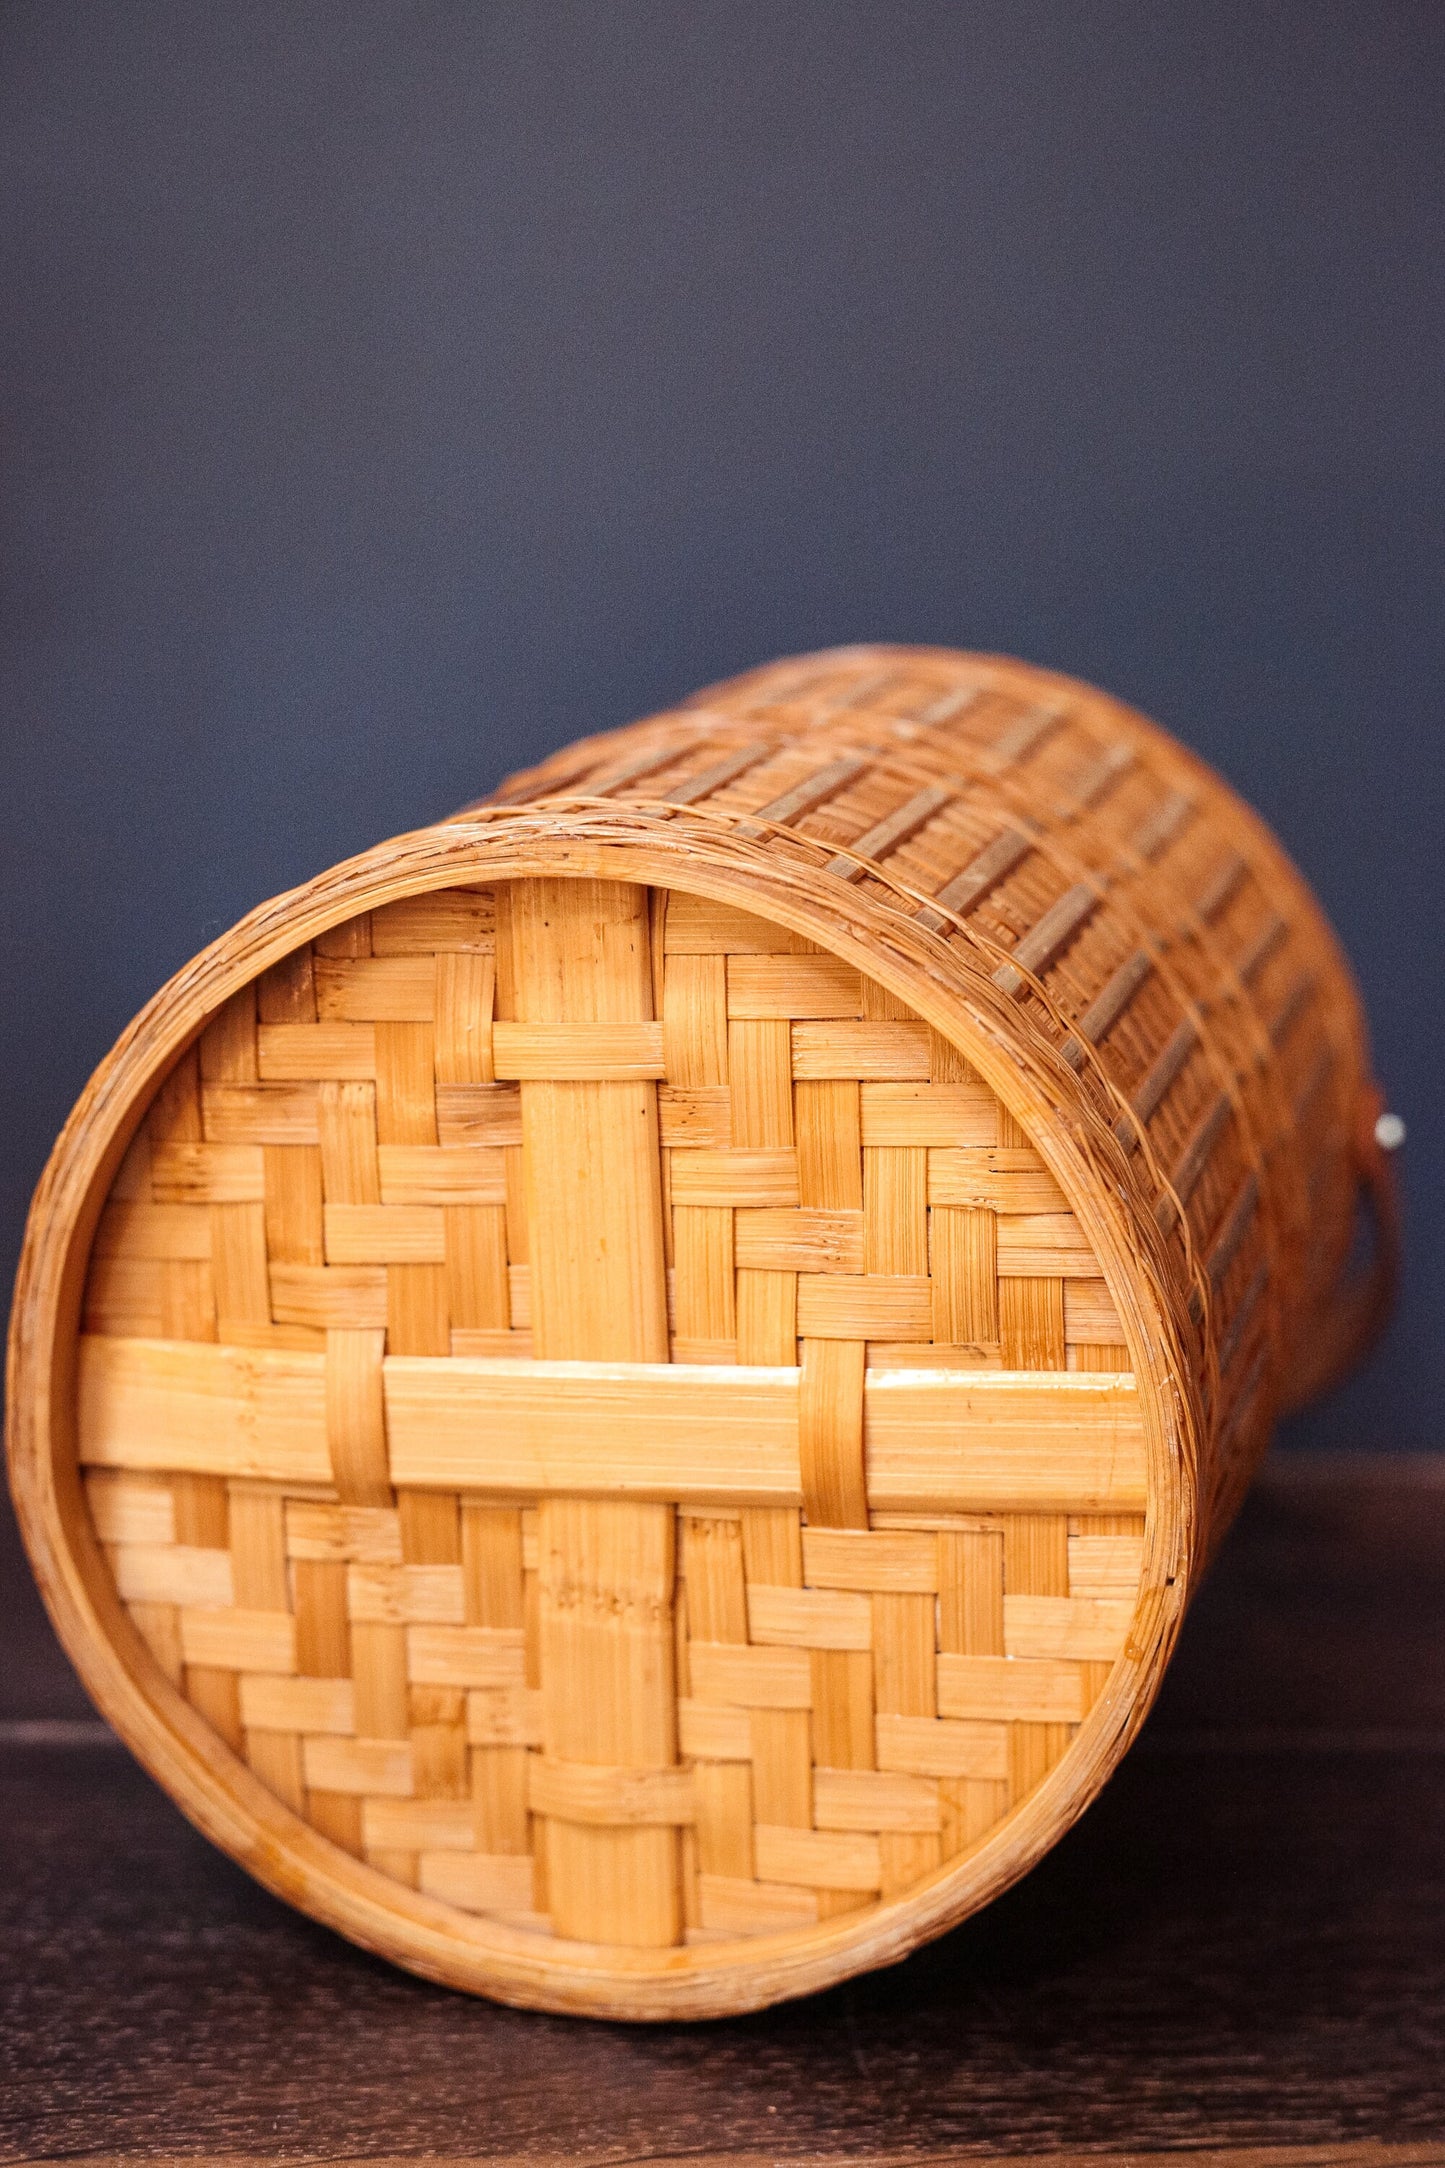 Round Wine Basket with Handle - Wicker Rattan Cylinder Basket